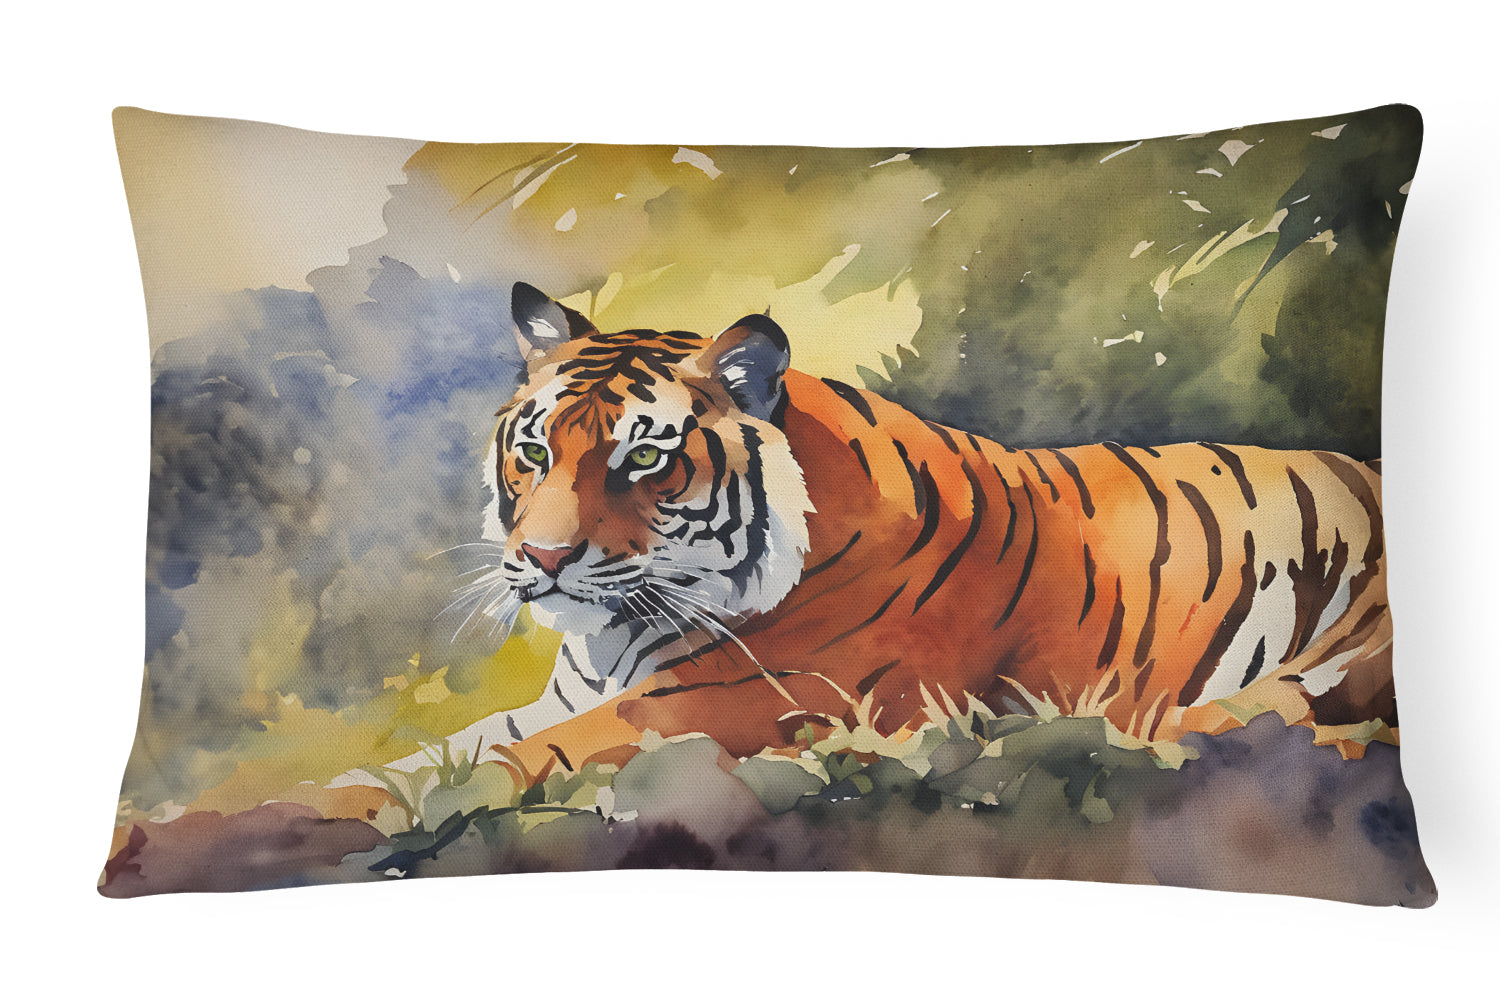 Buy this Bengal Tiger Throw Pillow